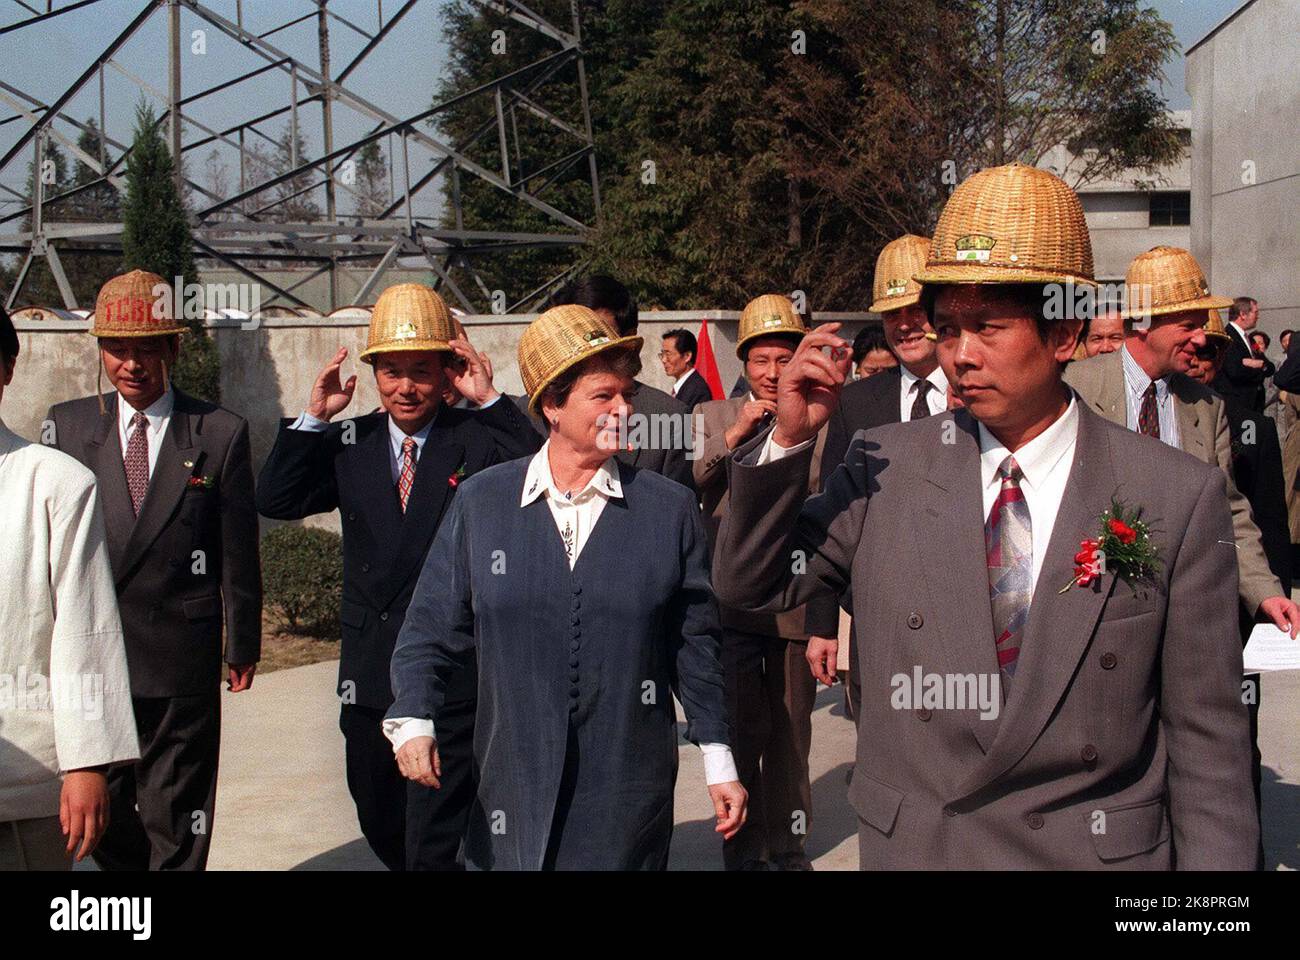 Cina 19951105: GRO Harlem Brundtland con uomini d'affari in Cina 1995. 36749 - - la foto è di circa 8 MB - - NTB -photo: Gunnar Kagge Foto Stock